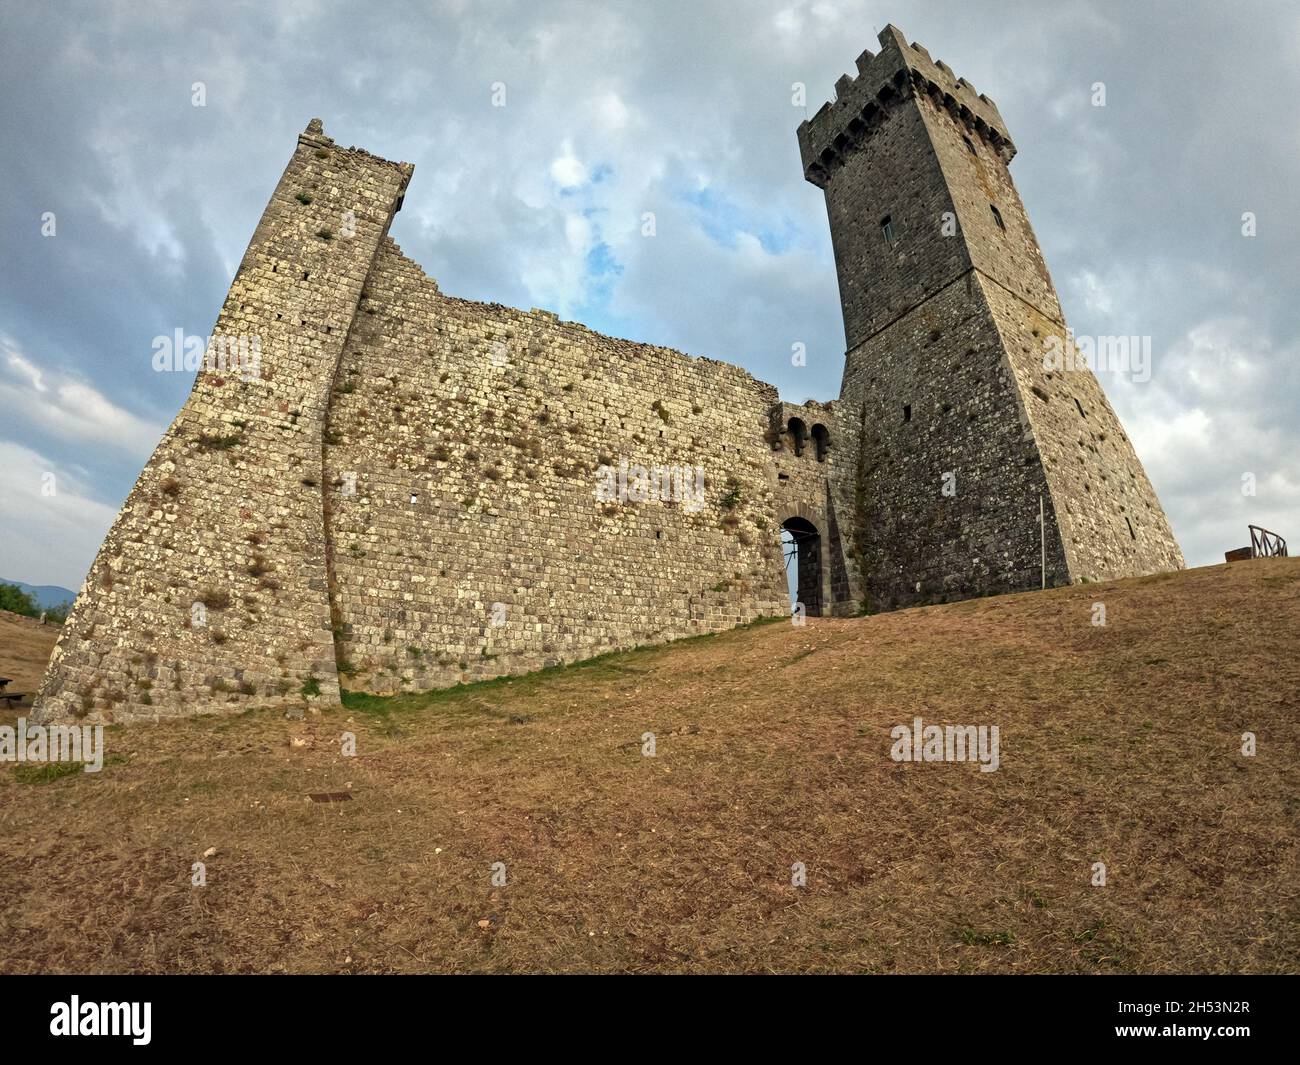 Rocca di Radicofani, Tuscany, Italy Stock Photo